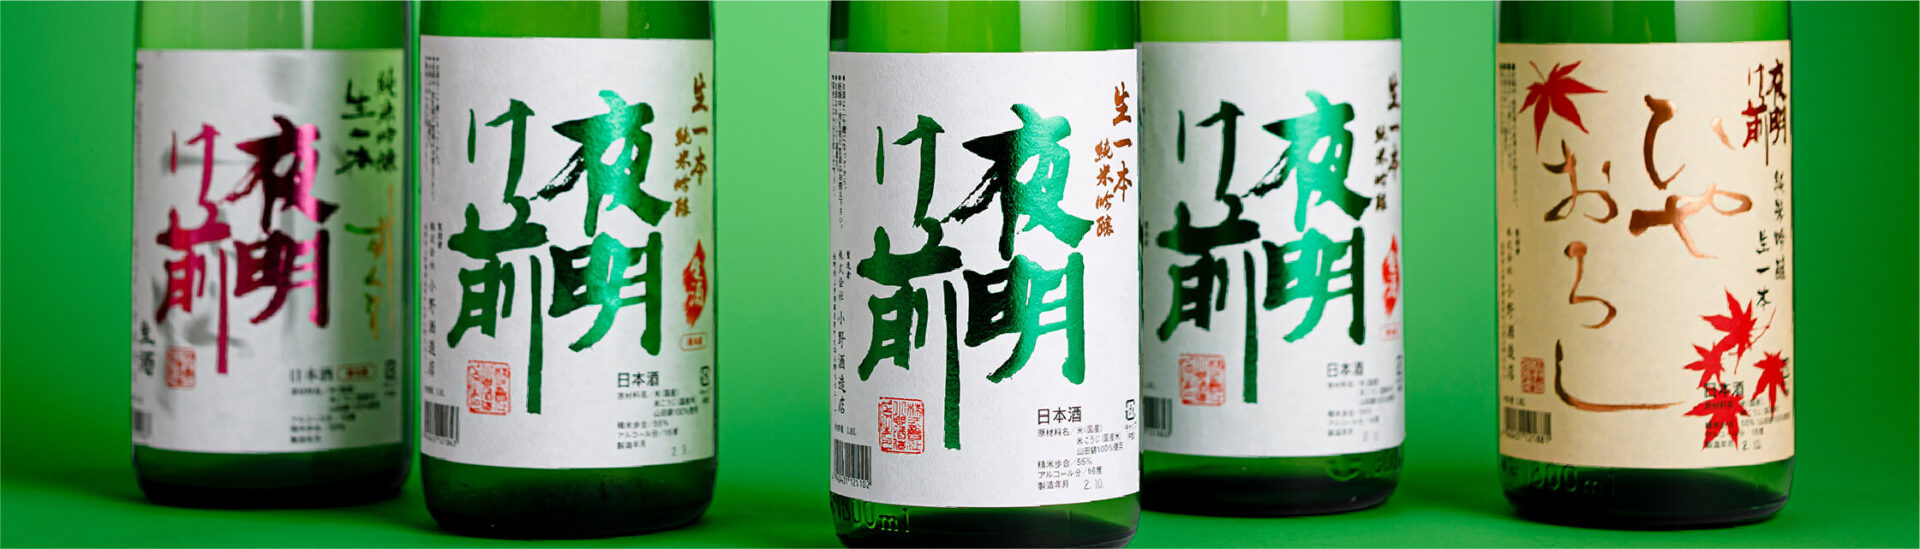 What kind of sake brand is Yoake Mae?夜明け前